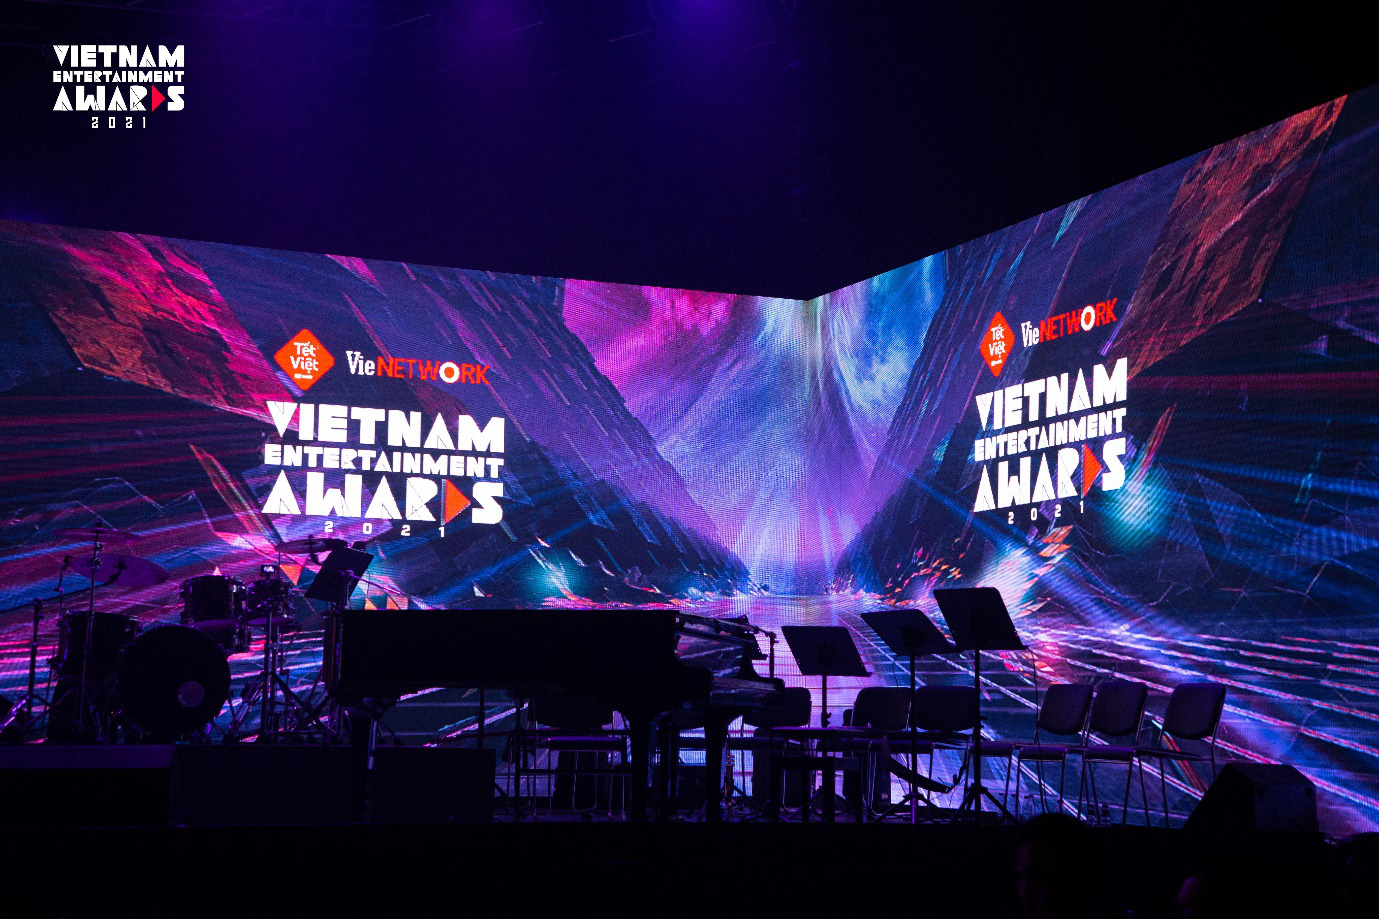 Đêm Gala Trao Giải sự kiện Vietnam Entertainment Awards 2021 - nơi những tài năng được tôn vinh - Ảnh 2.